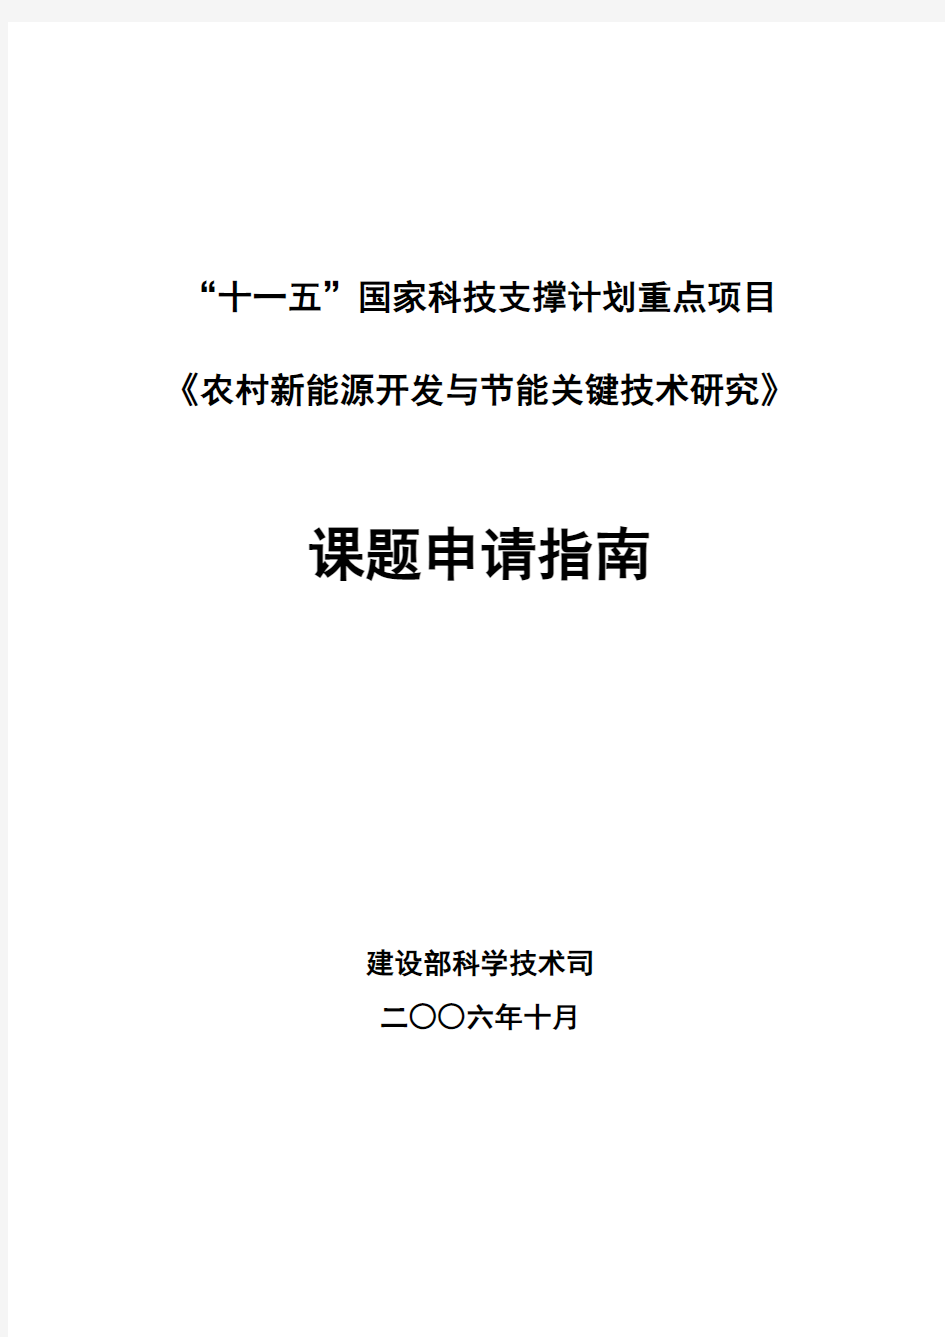 课题申报指南-中华人民共和国住房和城乡建设部